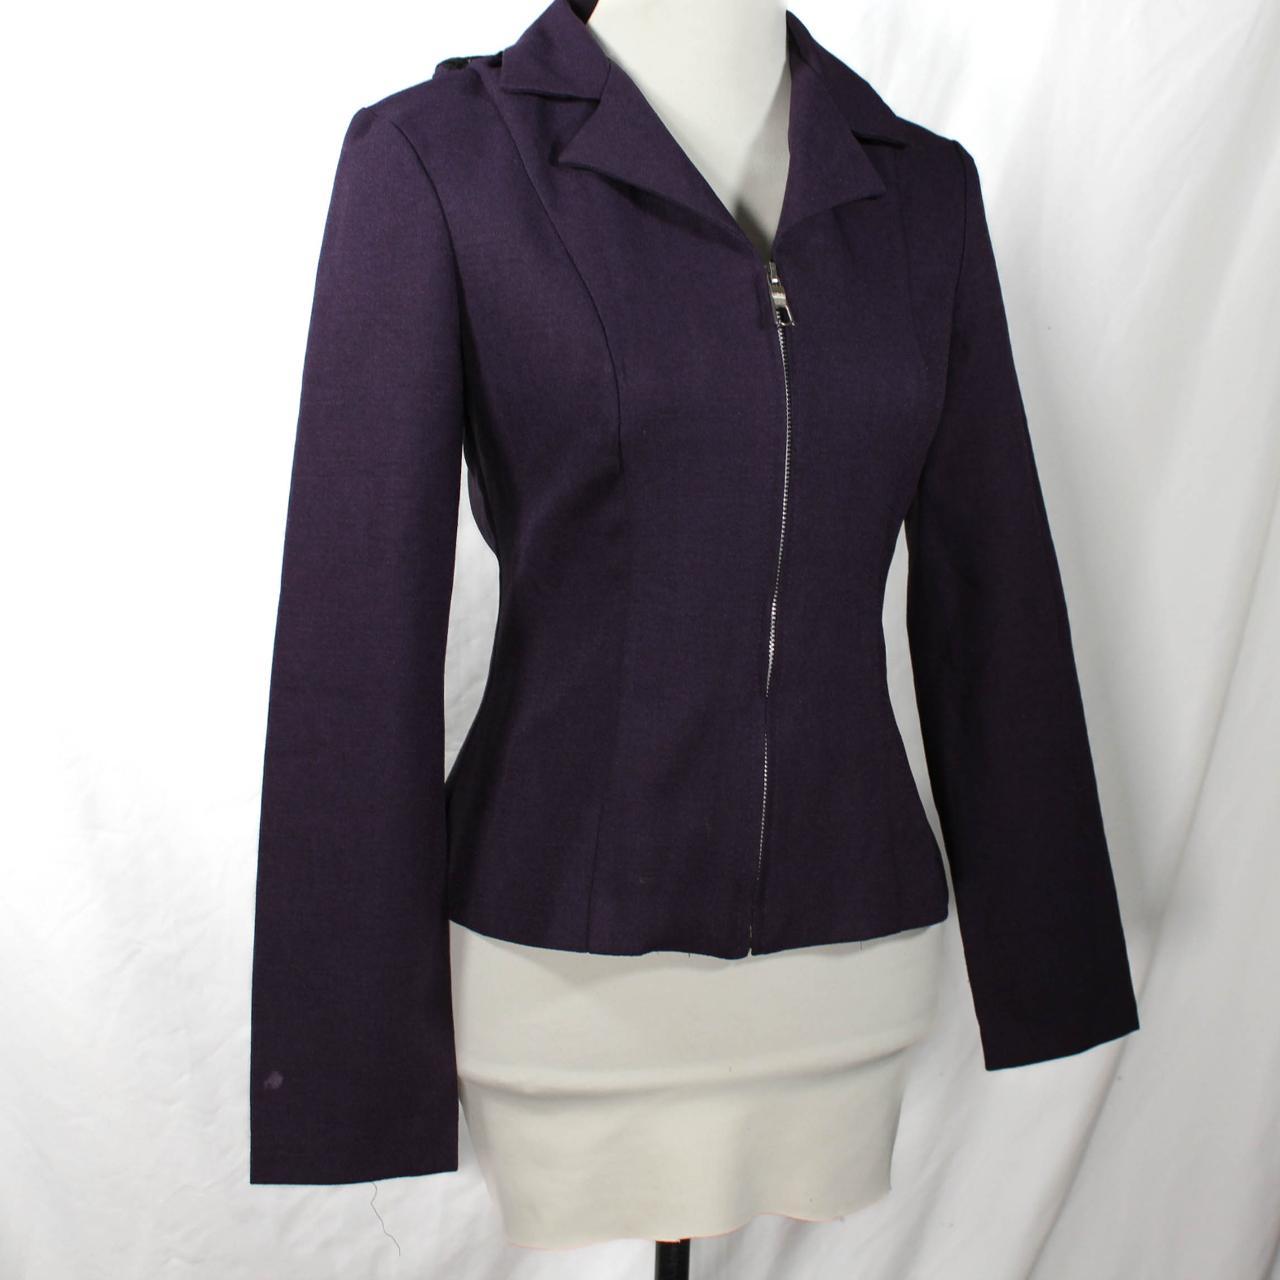 90s Jacket dark purple silver zipper front w/... - Depop